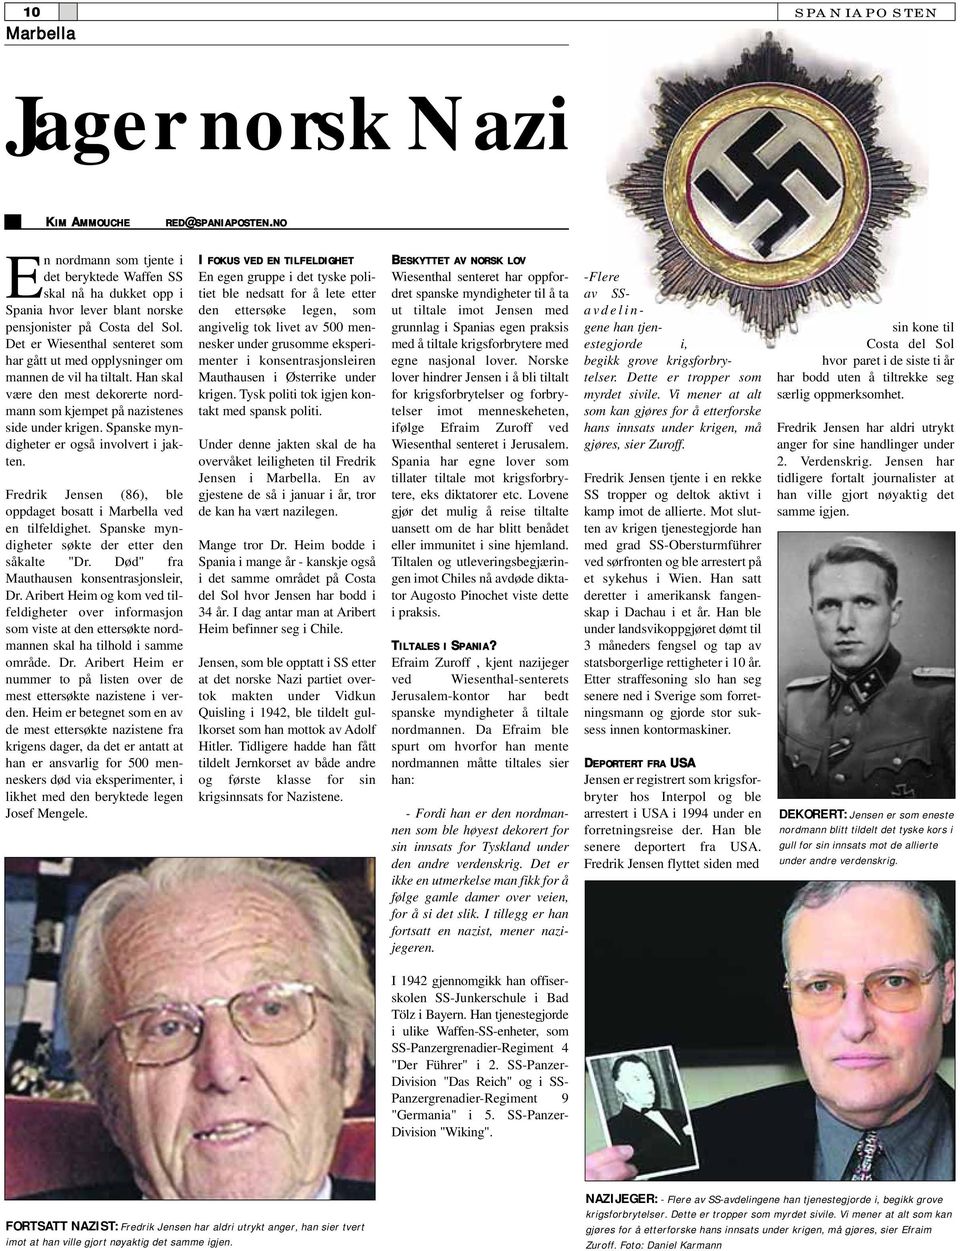 Det er Wiesenthal senteret som har gått ut med opplysninger om mannen de vil ha tiltalt. Han skal være den mest dekorerte nordmann som kjempet på nazistenes side under krigen.